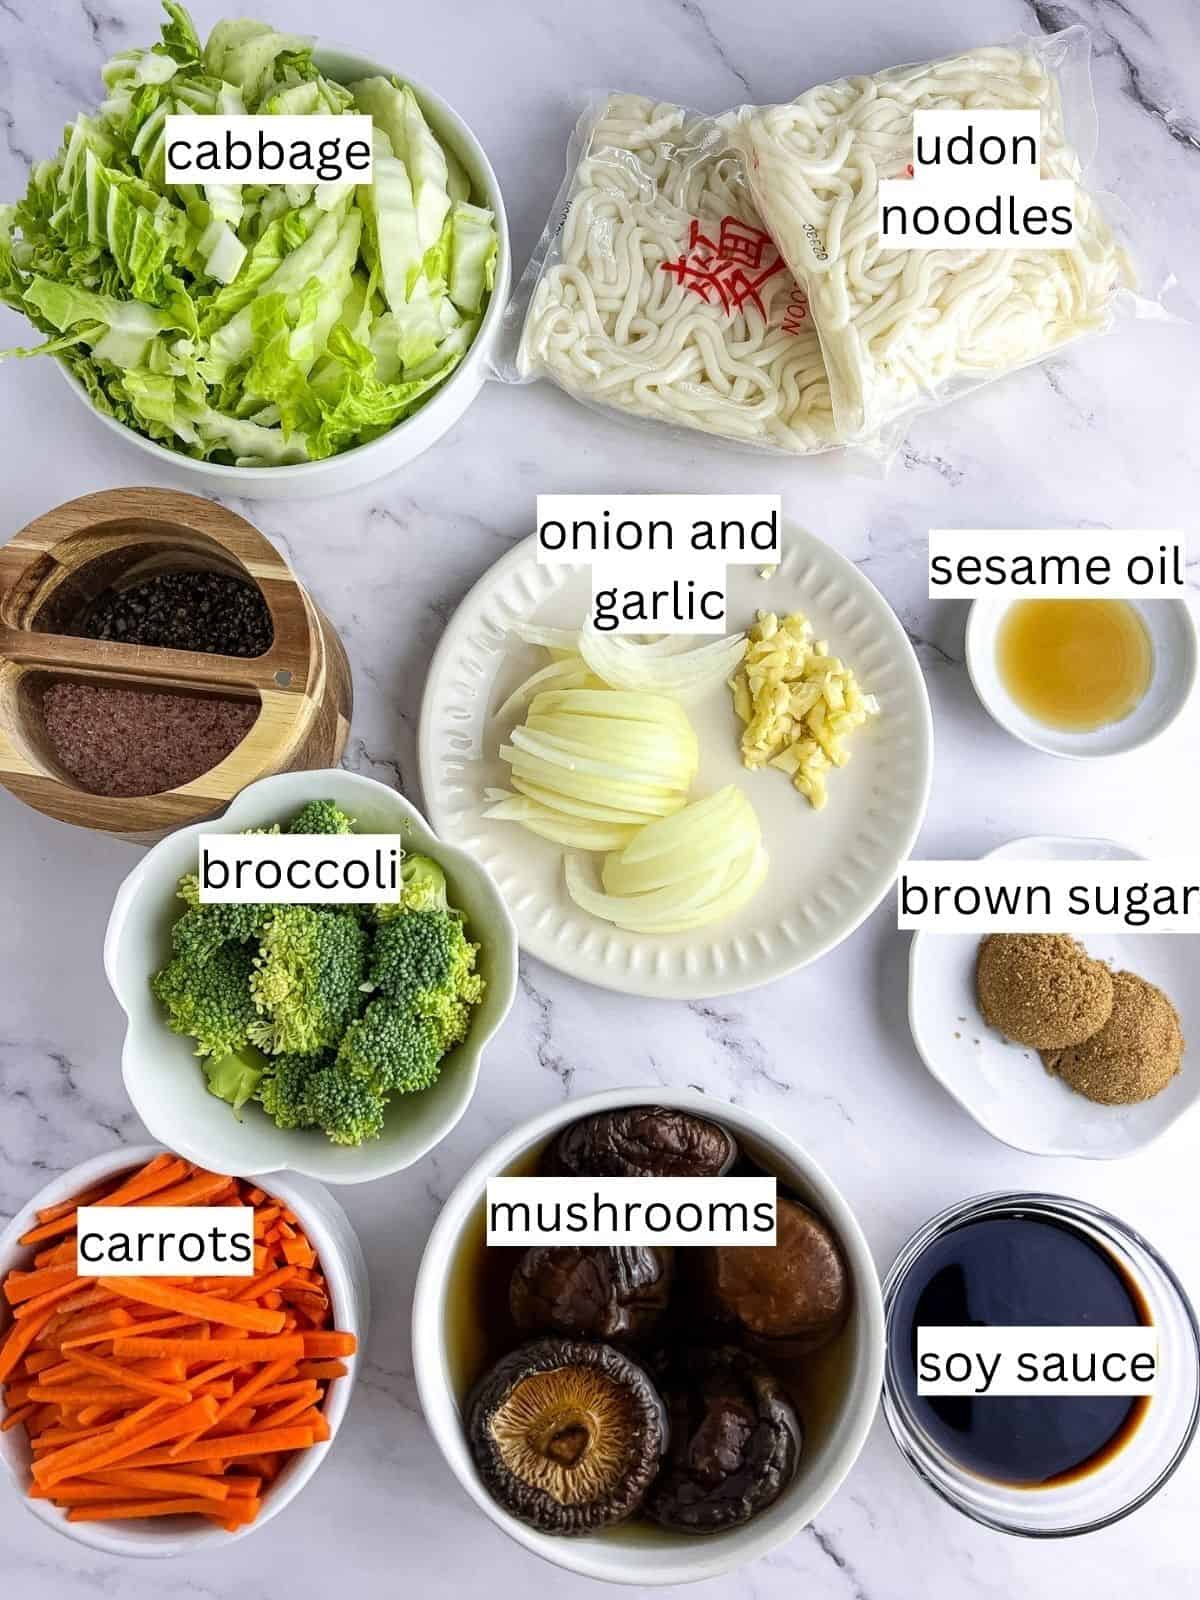 Ingredients for vegan udon stir-fry noodles.